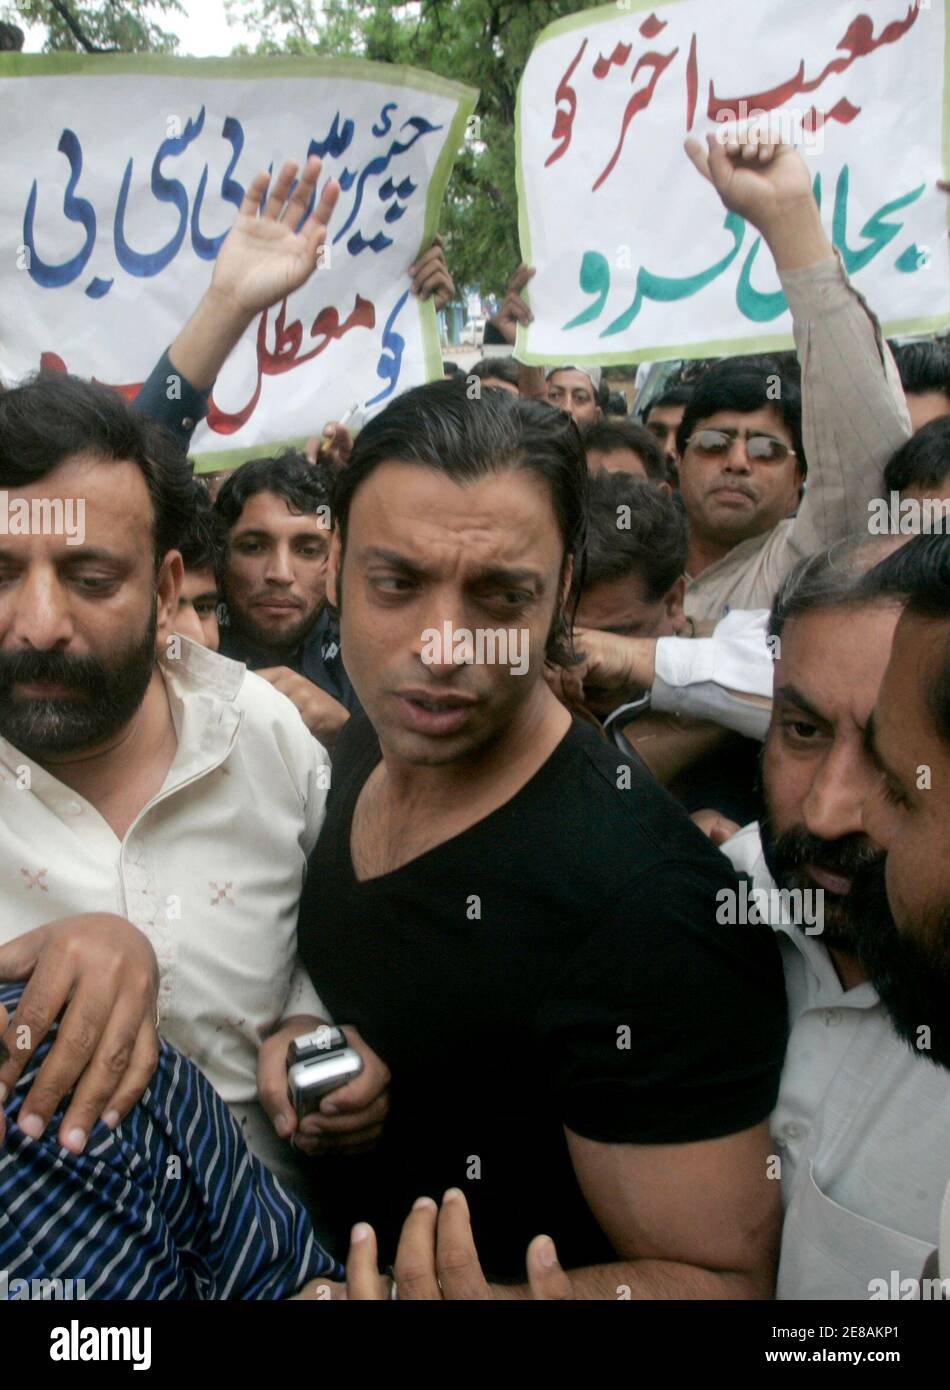 Pakistanische schnelle Bowler Shoaib Akhtar kommt an eine Pressekonferenz in Islamabad 2. April 2008 teilzunehmen. Pakistan Cricket Board am Dienstag angekündigt, ein fünfjähriges Verbot temperamentvoll schnelle Bowler Akhtar für wiederholte Verstöße gegen die Disziplin. REUTERS/Faisal Mahmood (PAKISTAN) Stockfoto